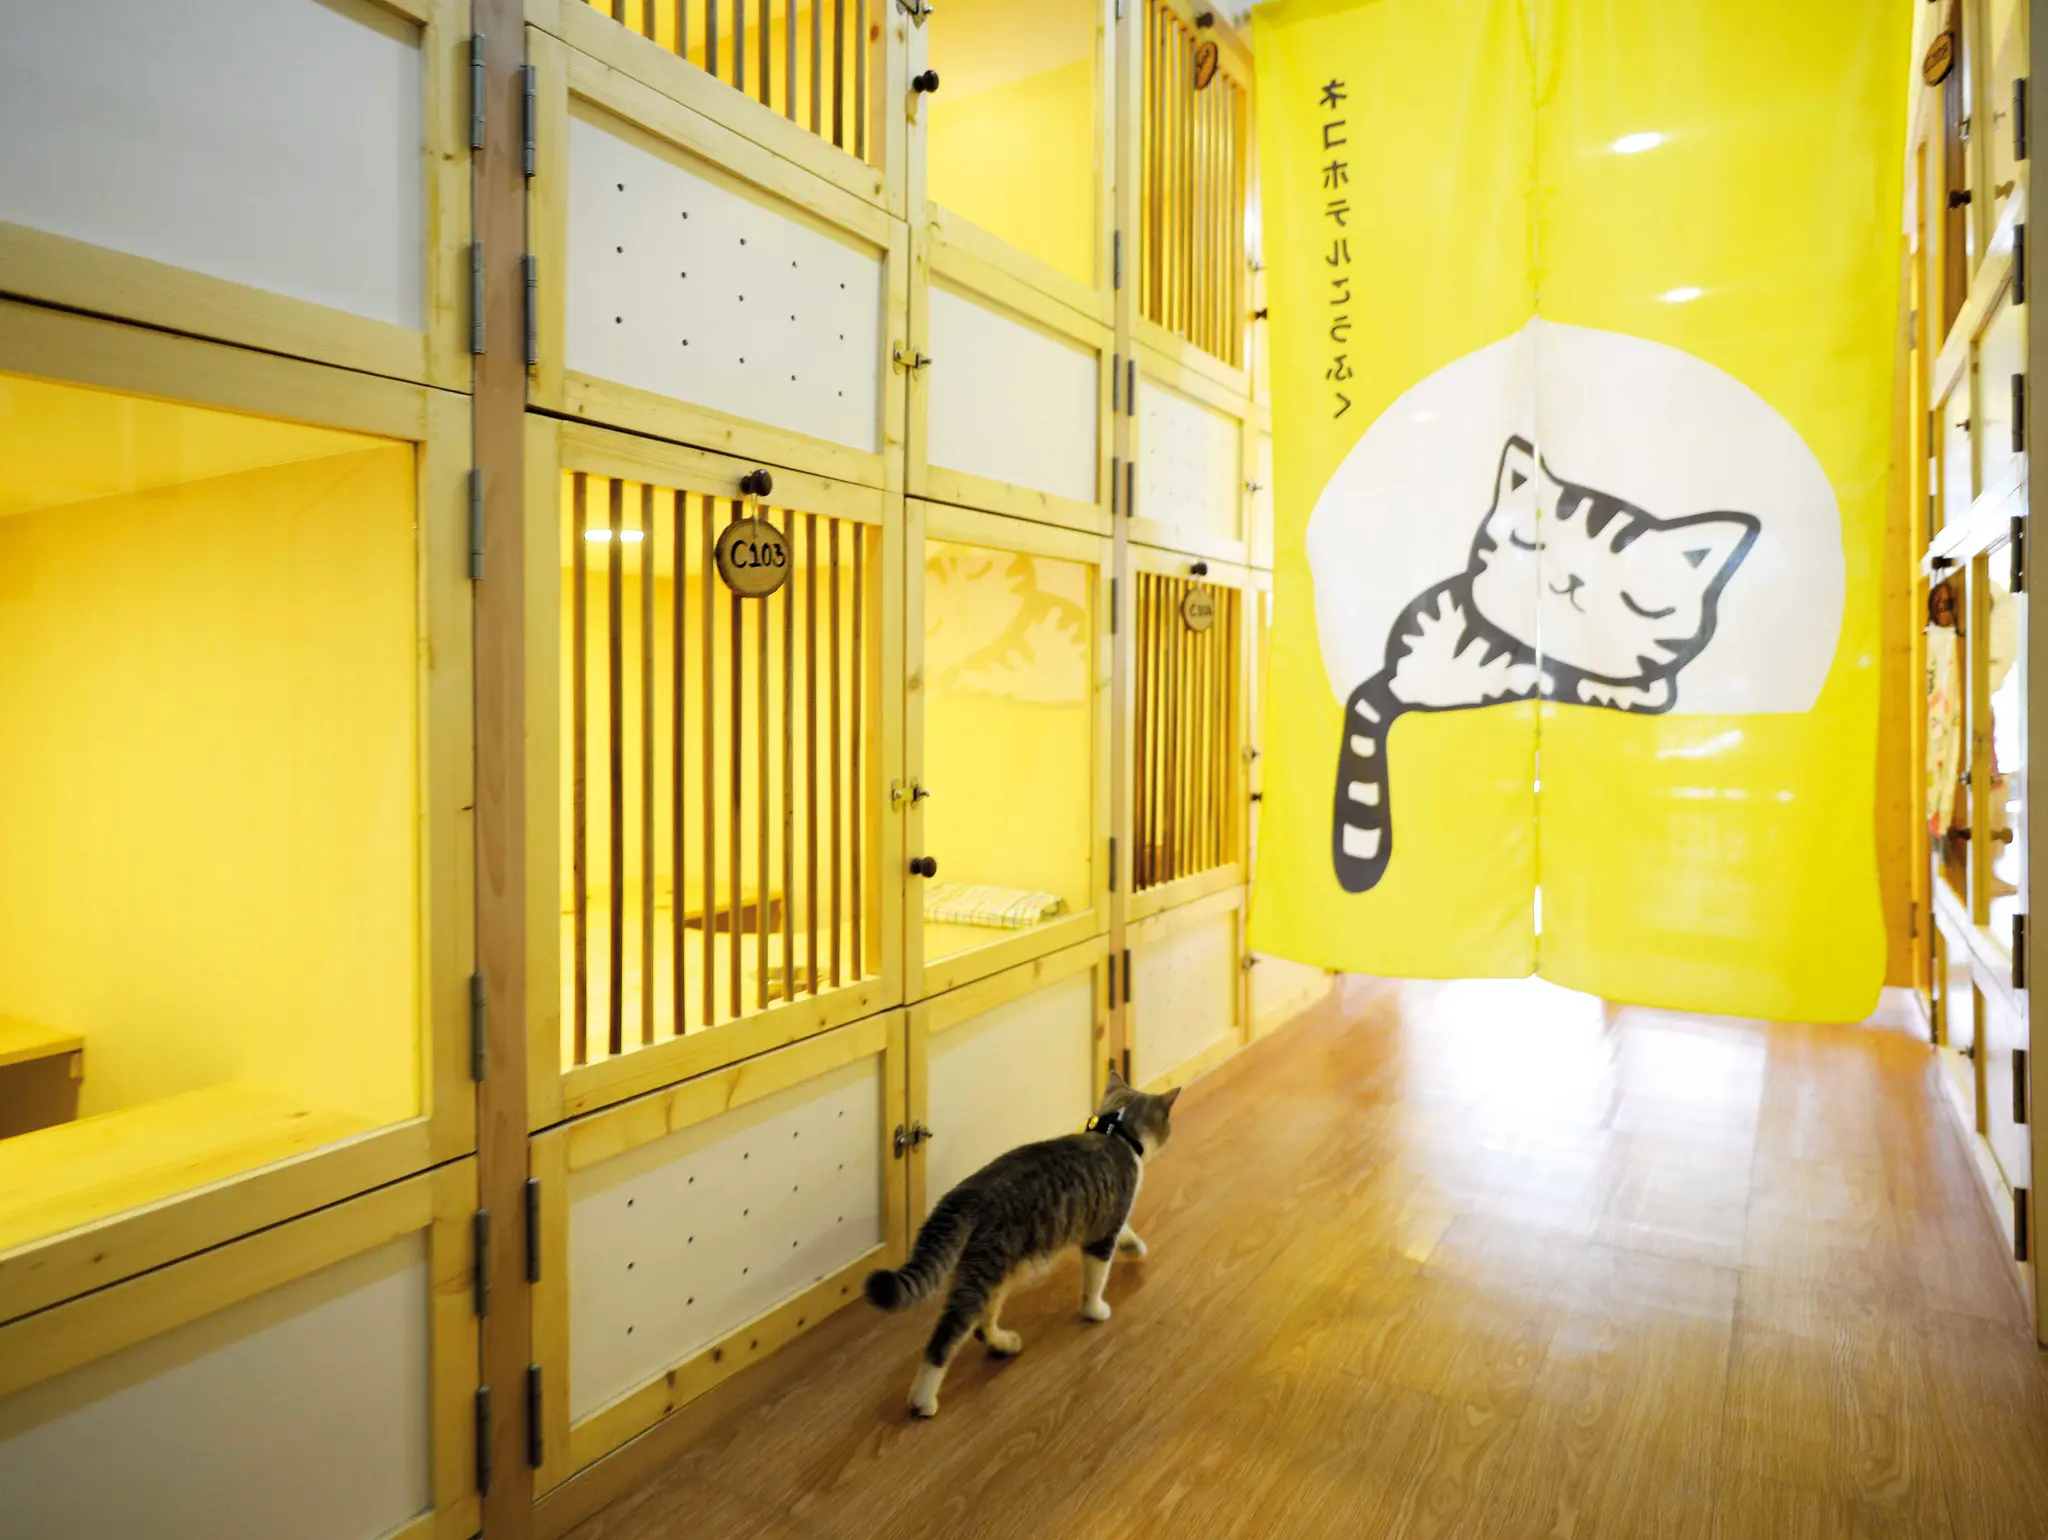 ลองอ่าน 470 Kofuku Cat Hotel โรงแรมที่ทั้งคนและแมวมีความรัก ความสุข ความผูกพัน